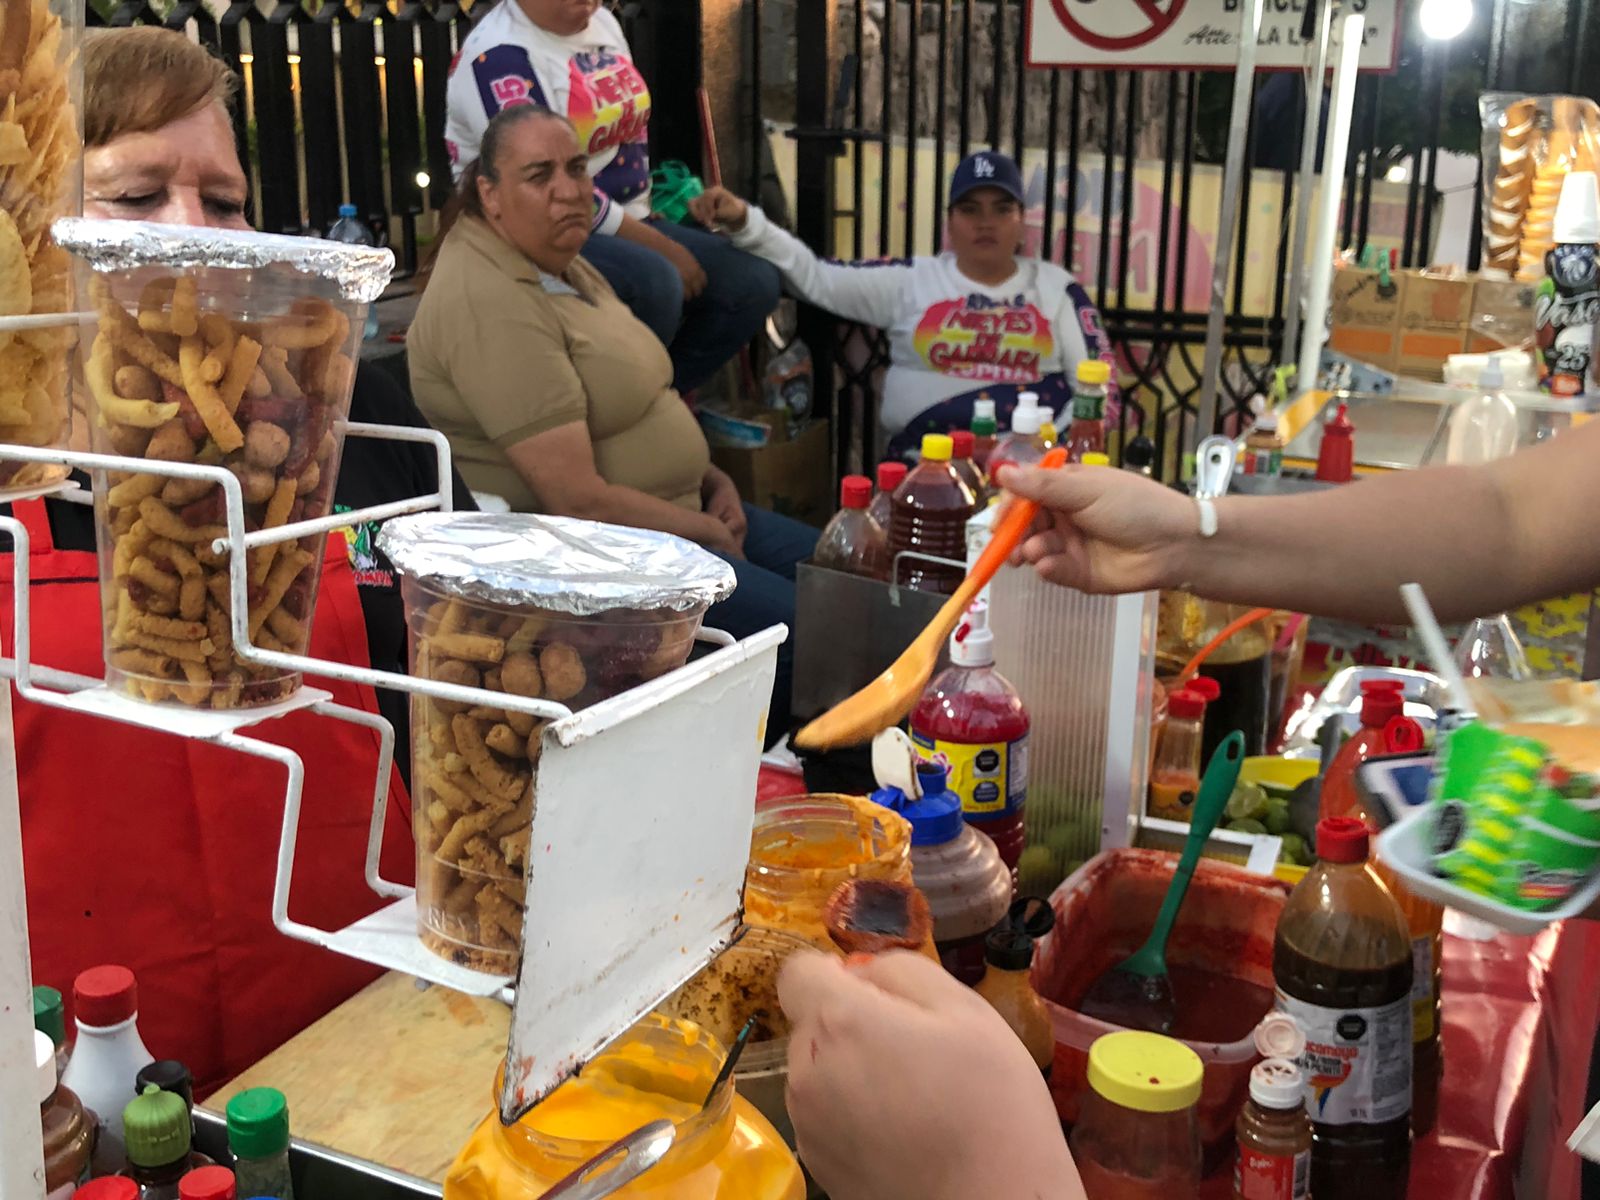 El negocio de Don Florentino y Doña María innovó la manera de comer elotes en Culiacán. Fotografía: Valeria Estrada Apodaca